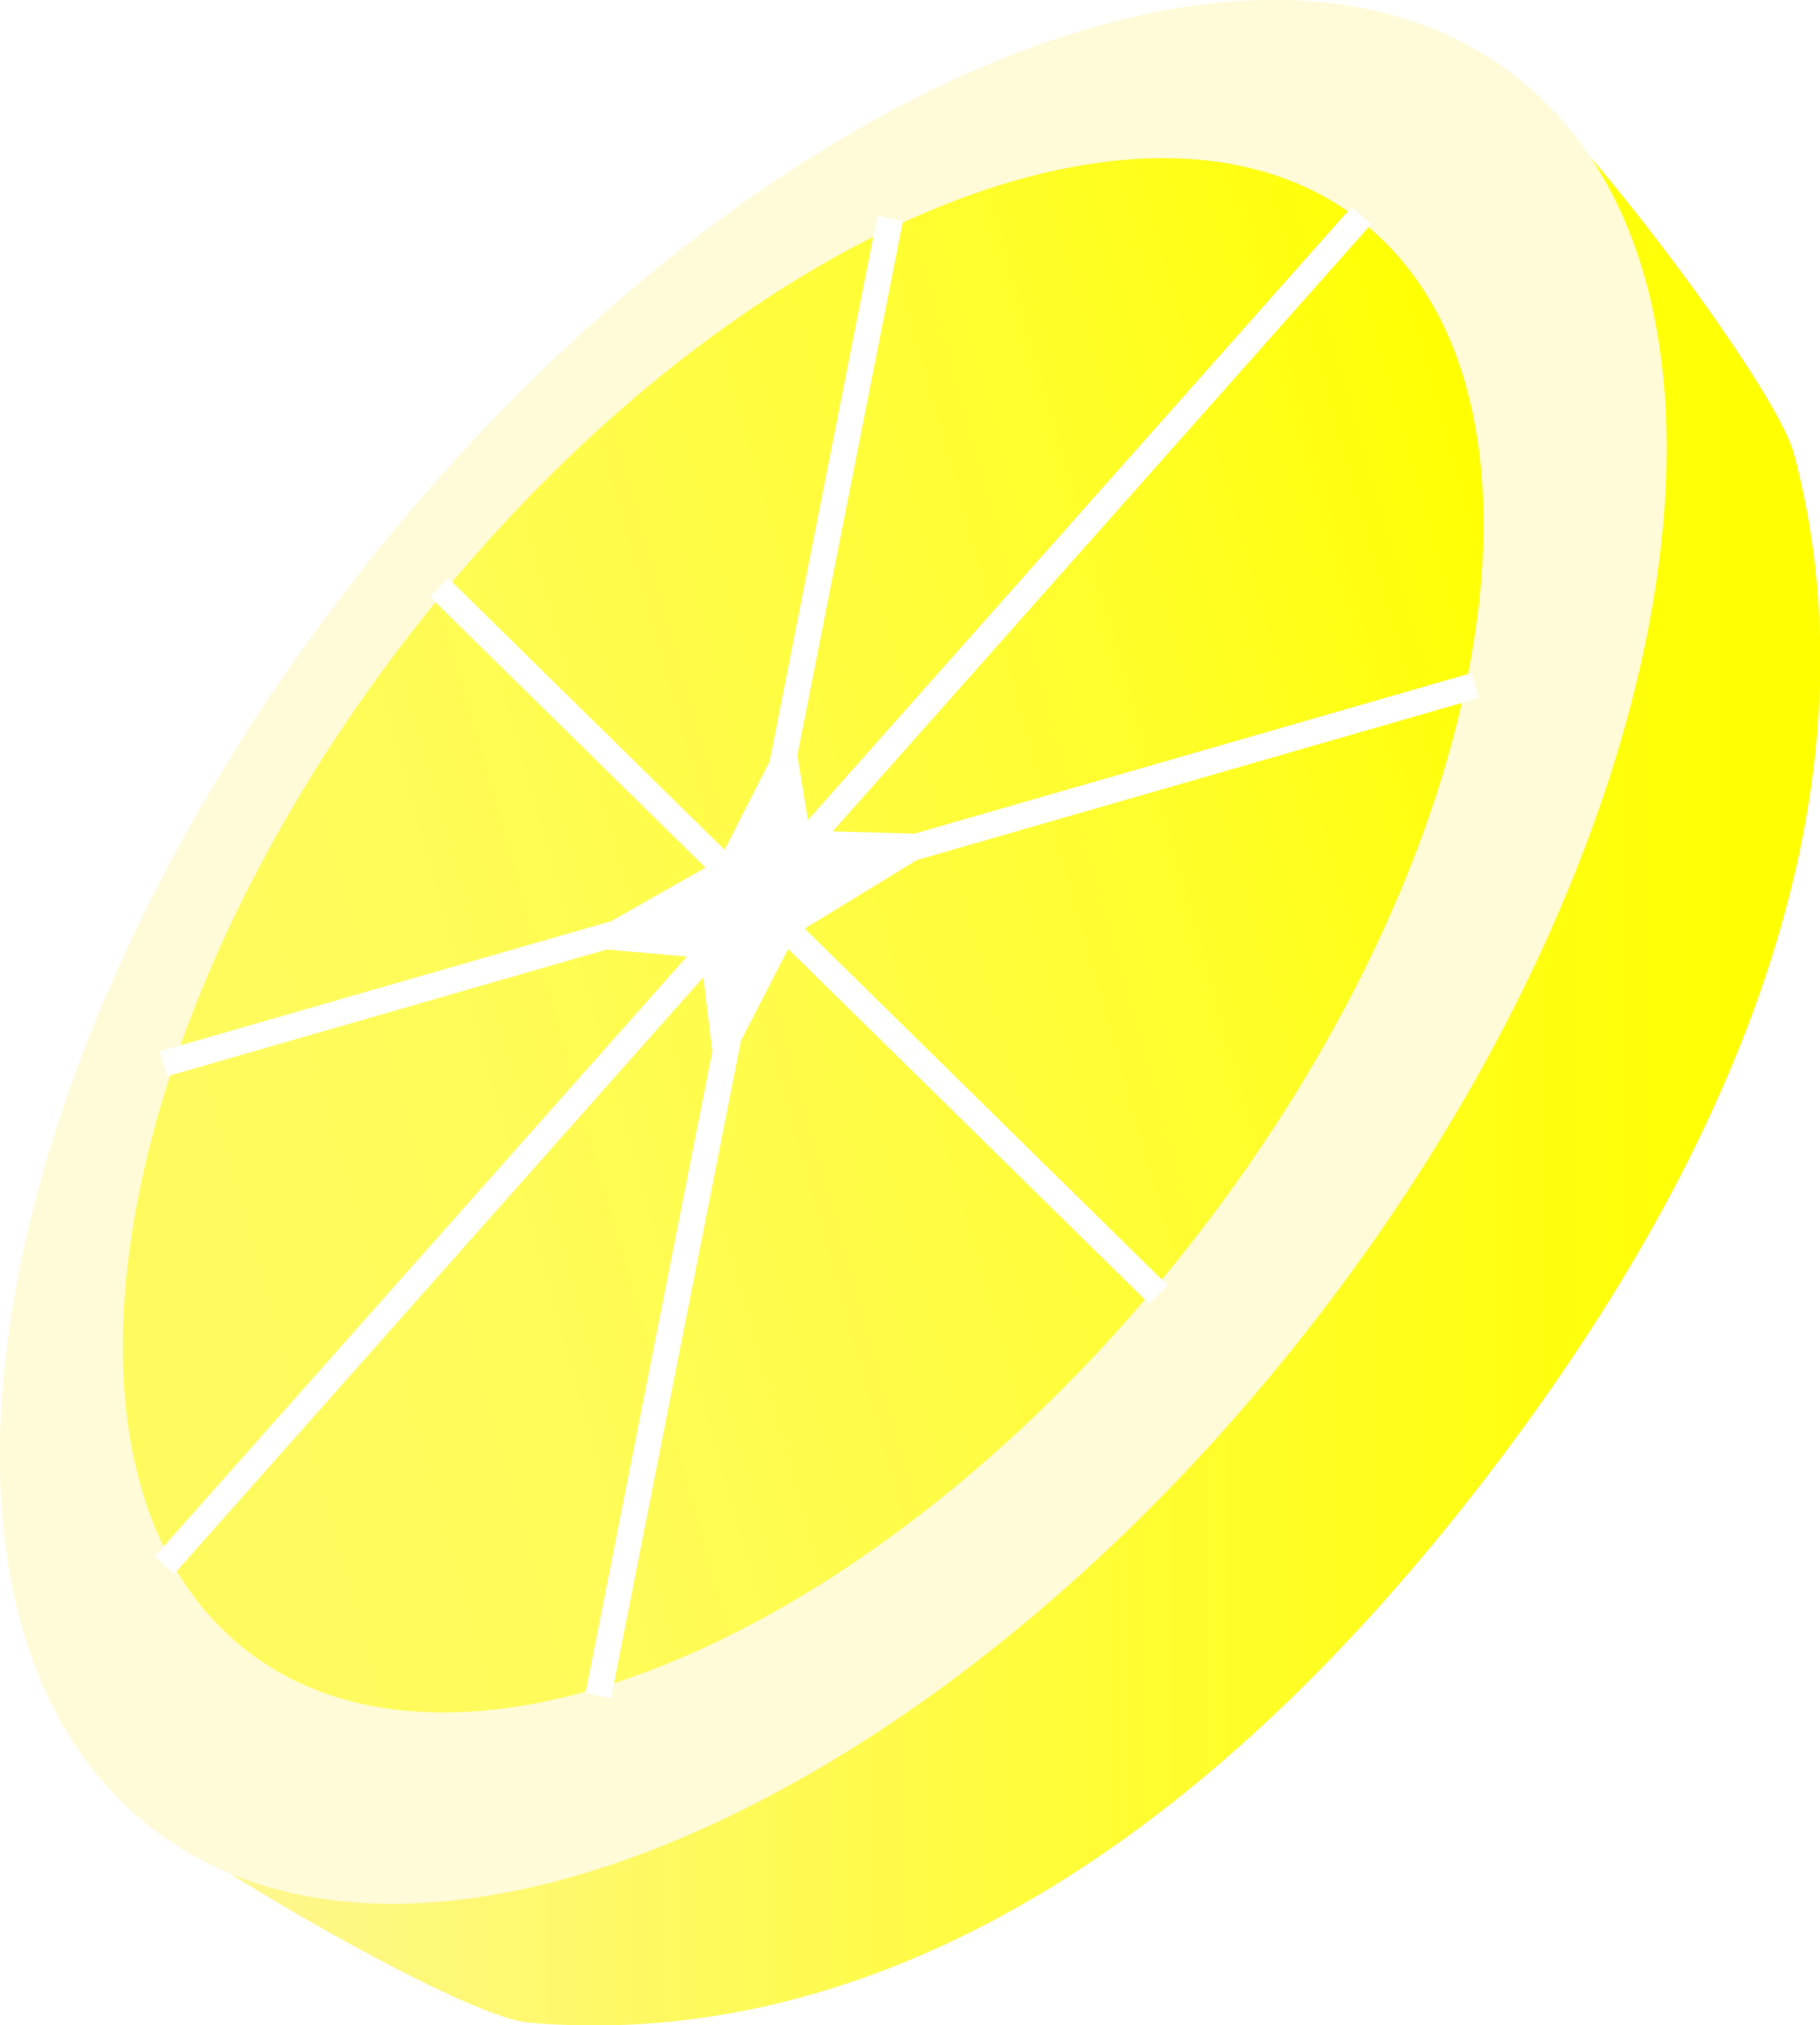 Lemon clip art vector lemon graphics image 8 clipartcow